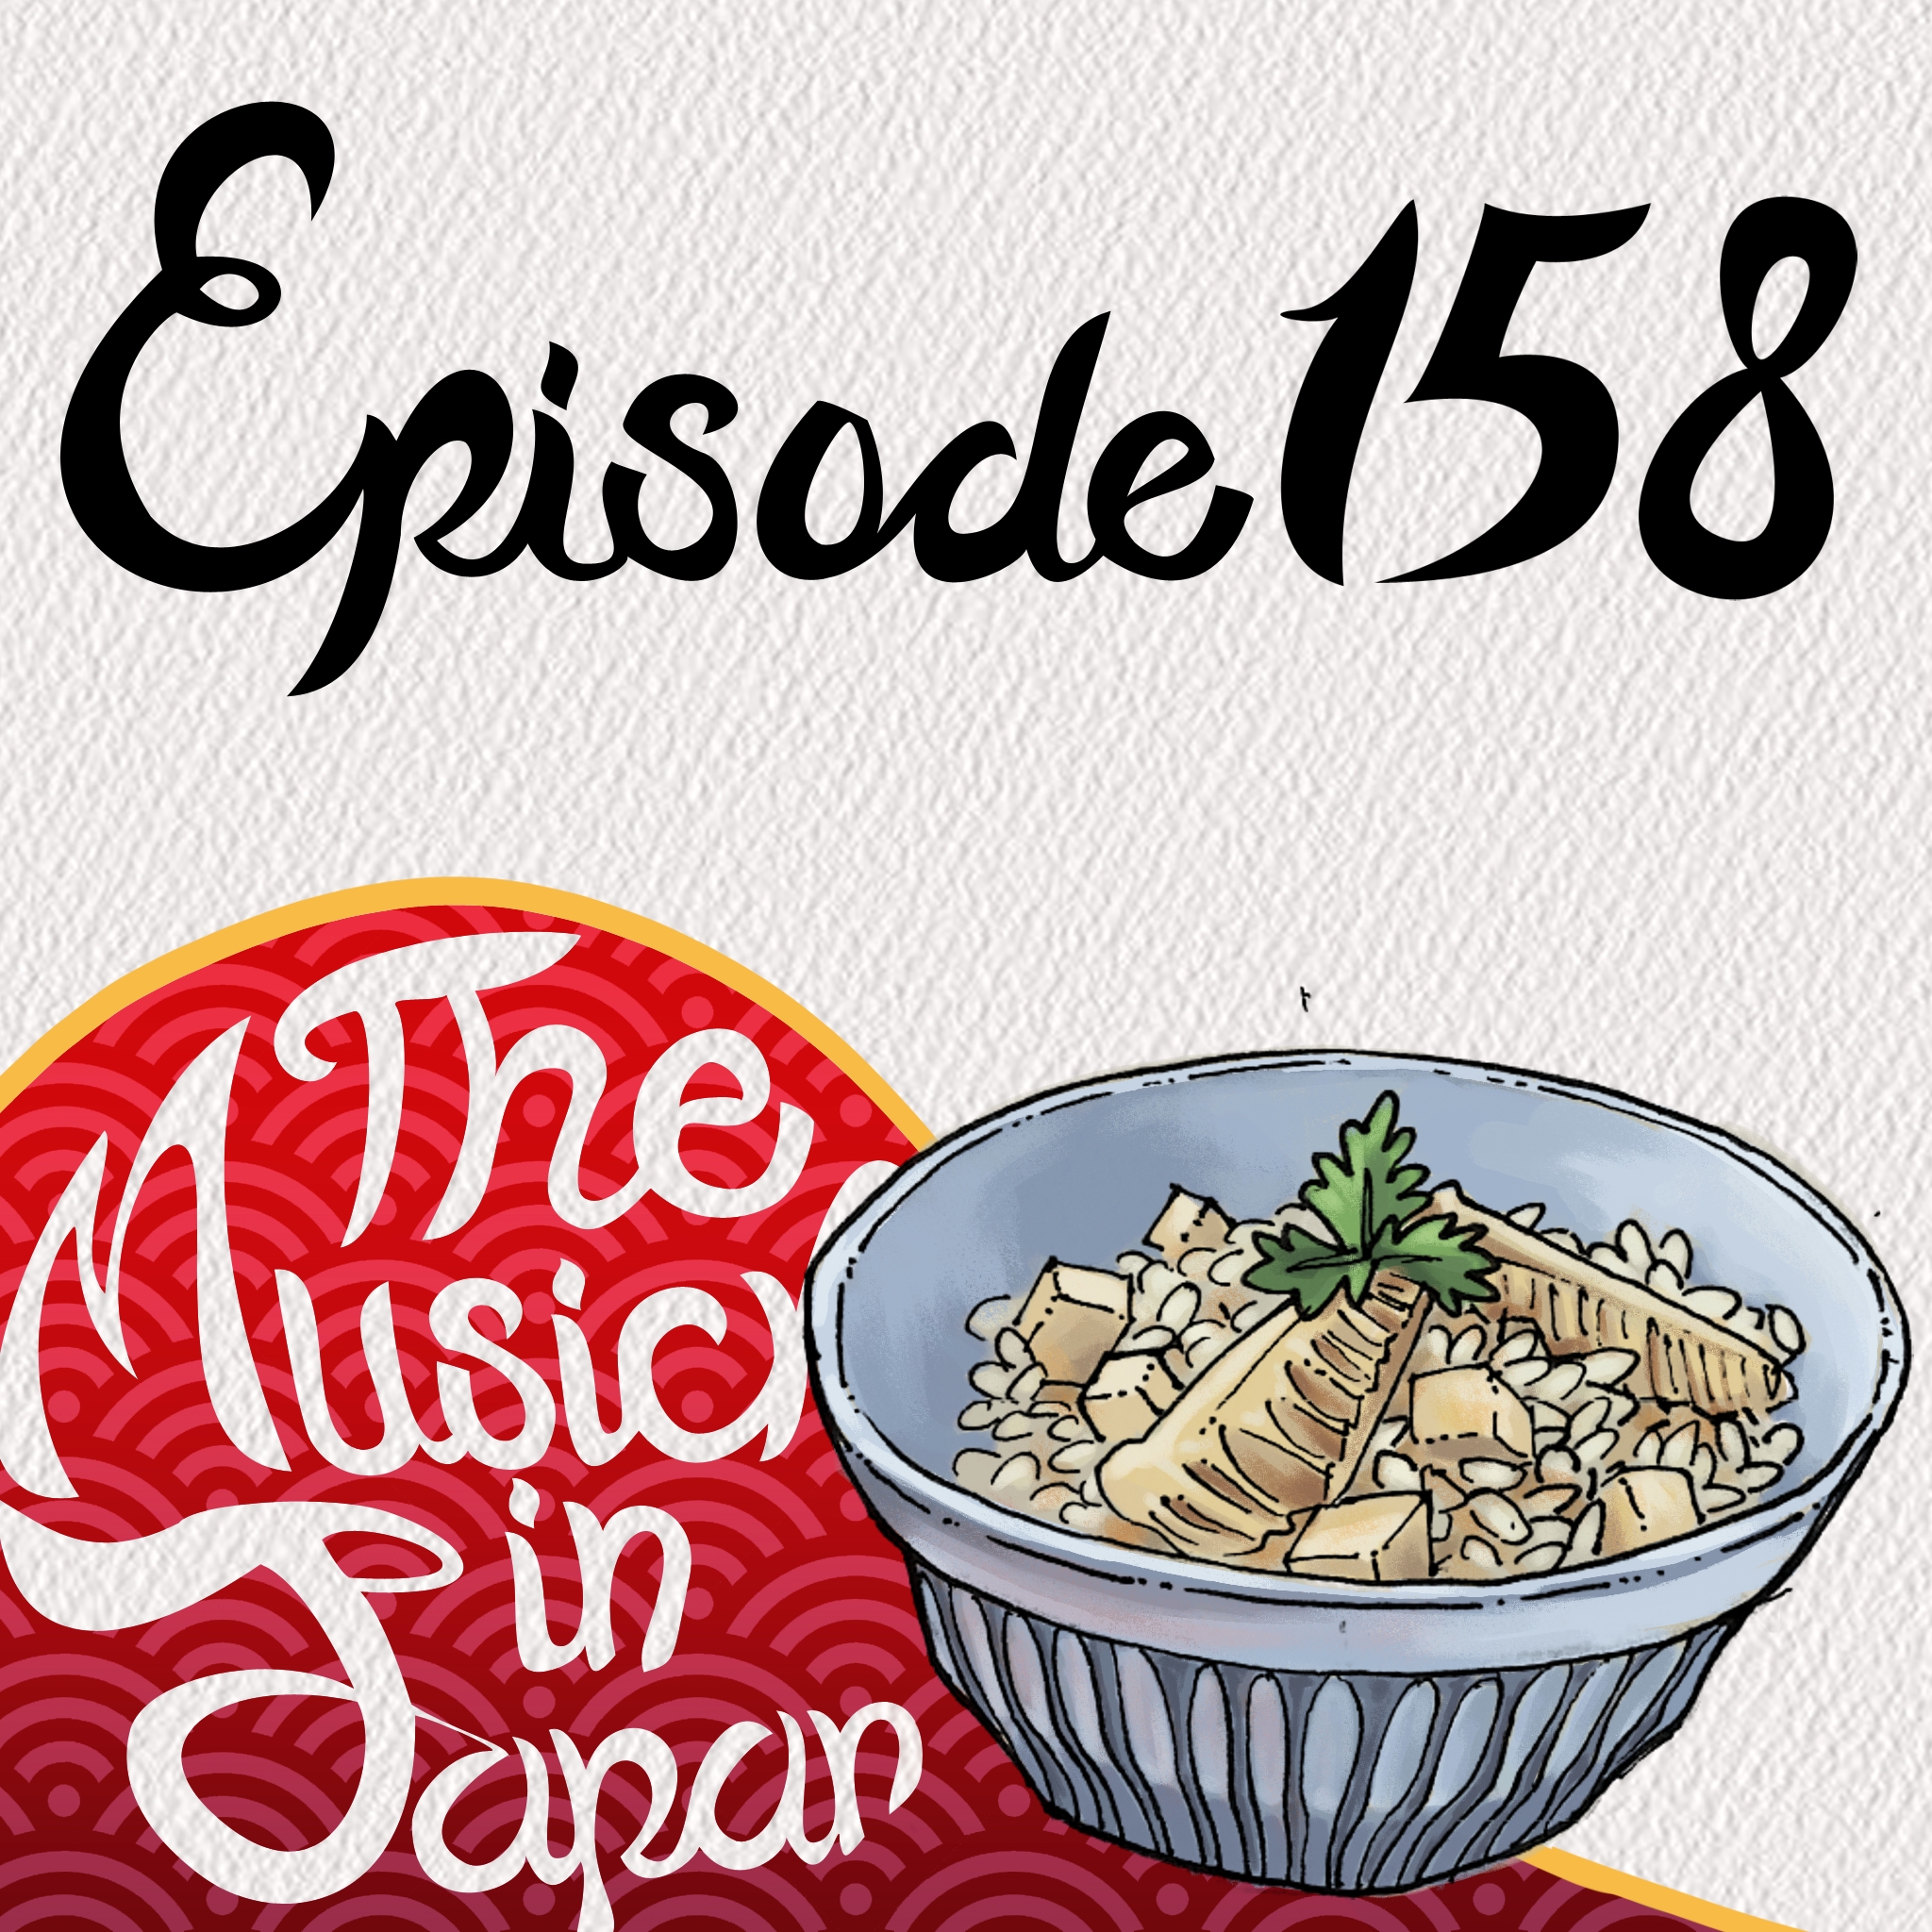 Episode 158: Socializing in Japan vs the US